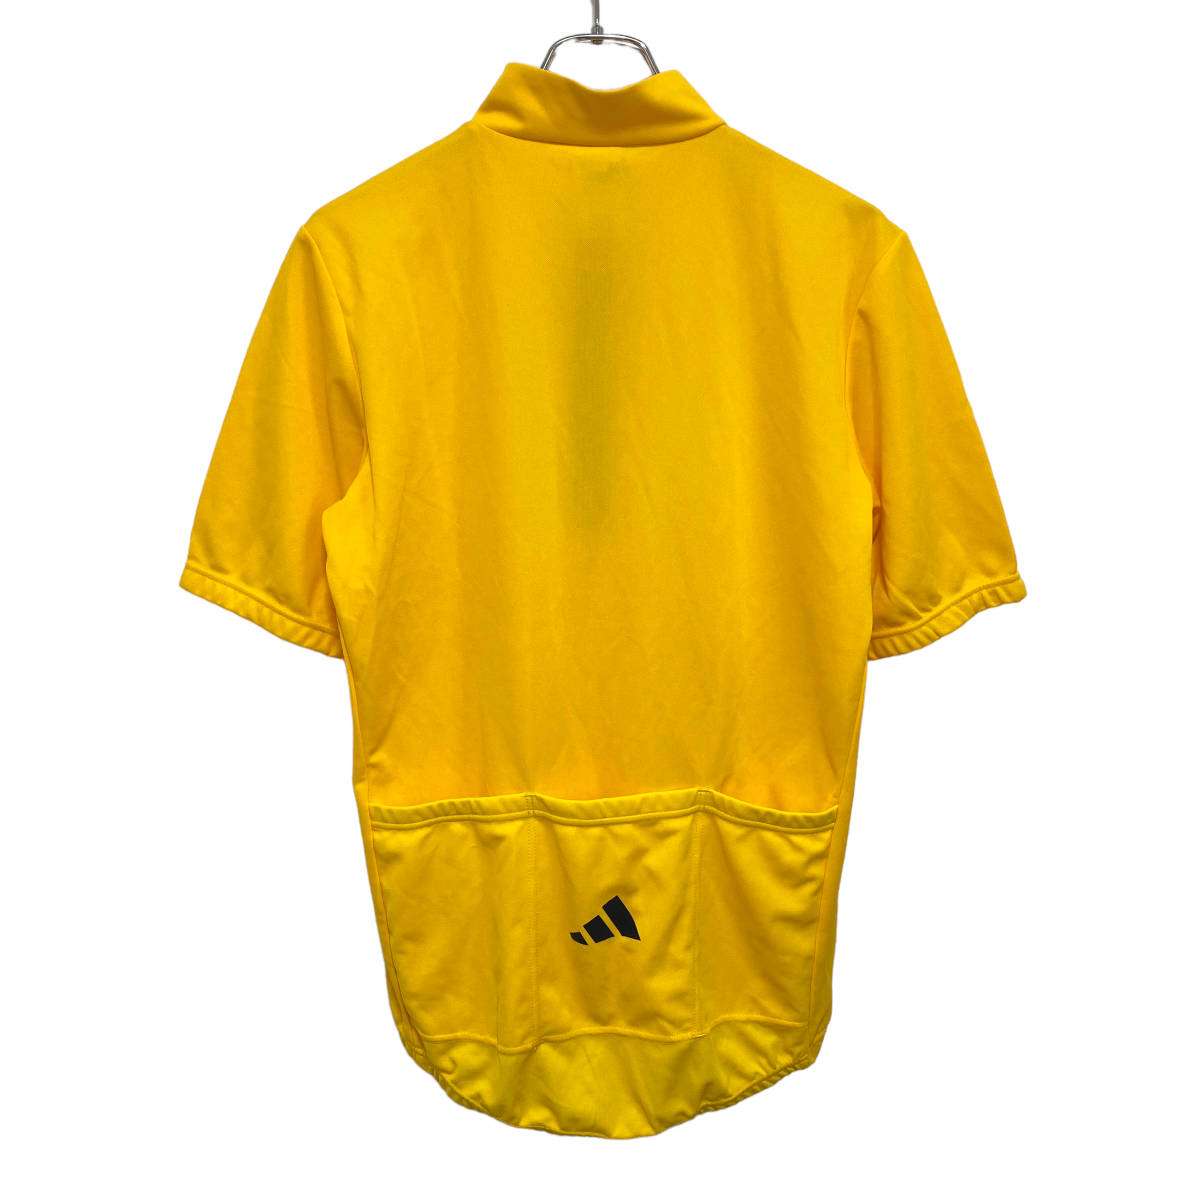  Италия производства adidas Adidas Logo велосипедное джерси рубашка L желтый мужской велосипед велоспорт стоимость доставки 185 иен 23-1026